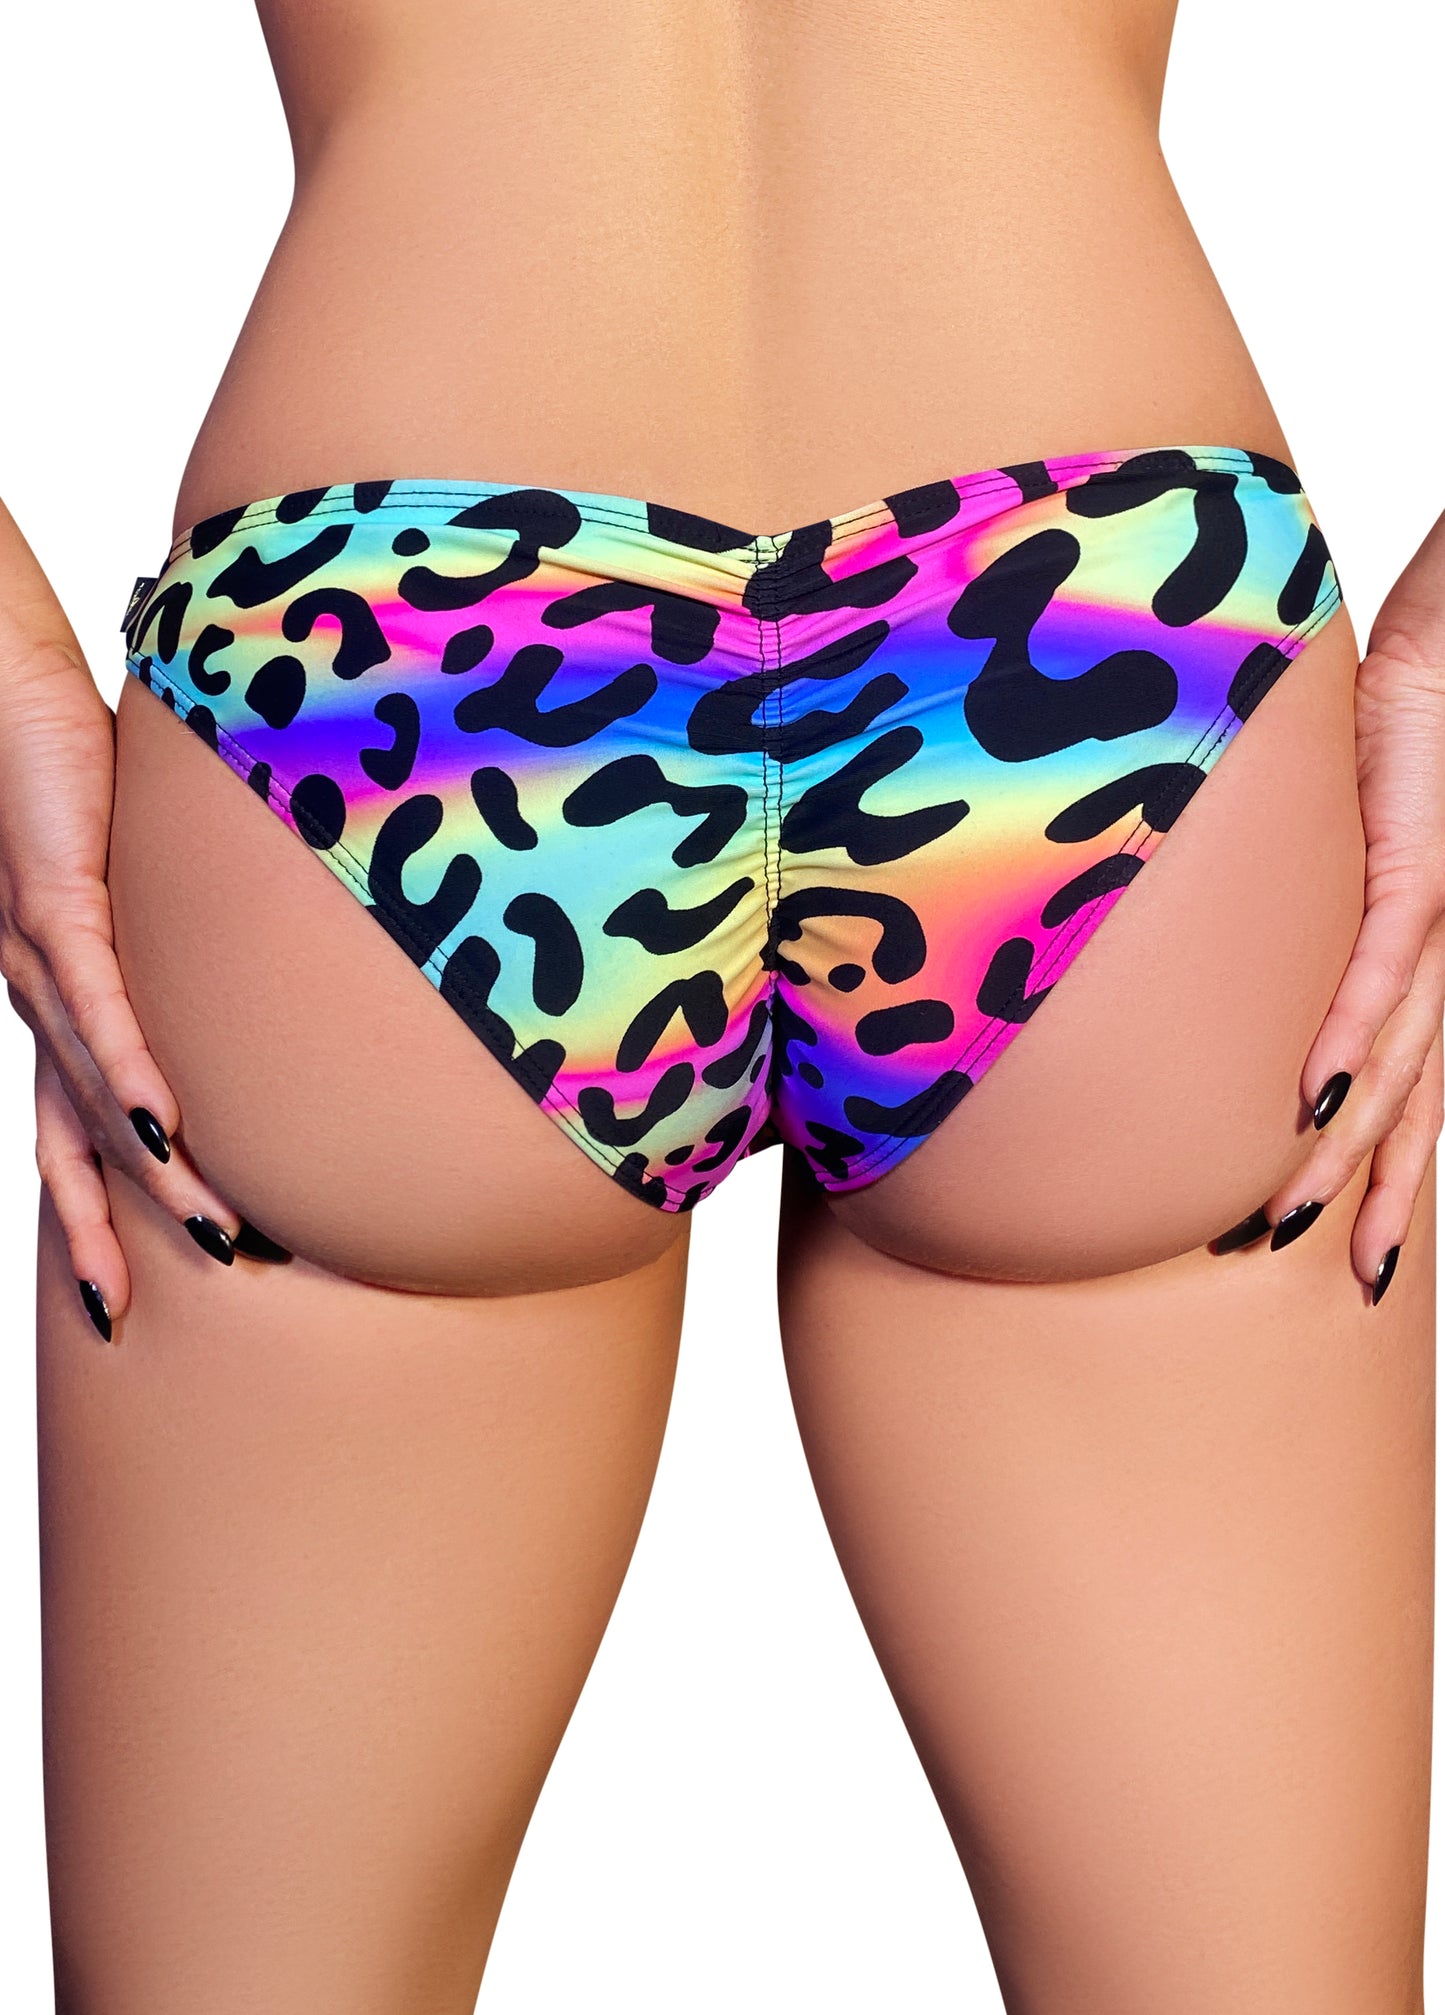 Neon Leopard / Zebra Scanty Pants